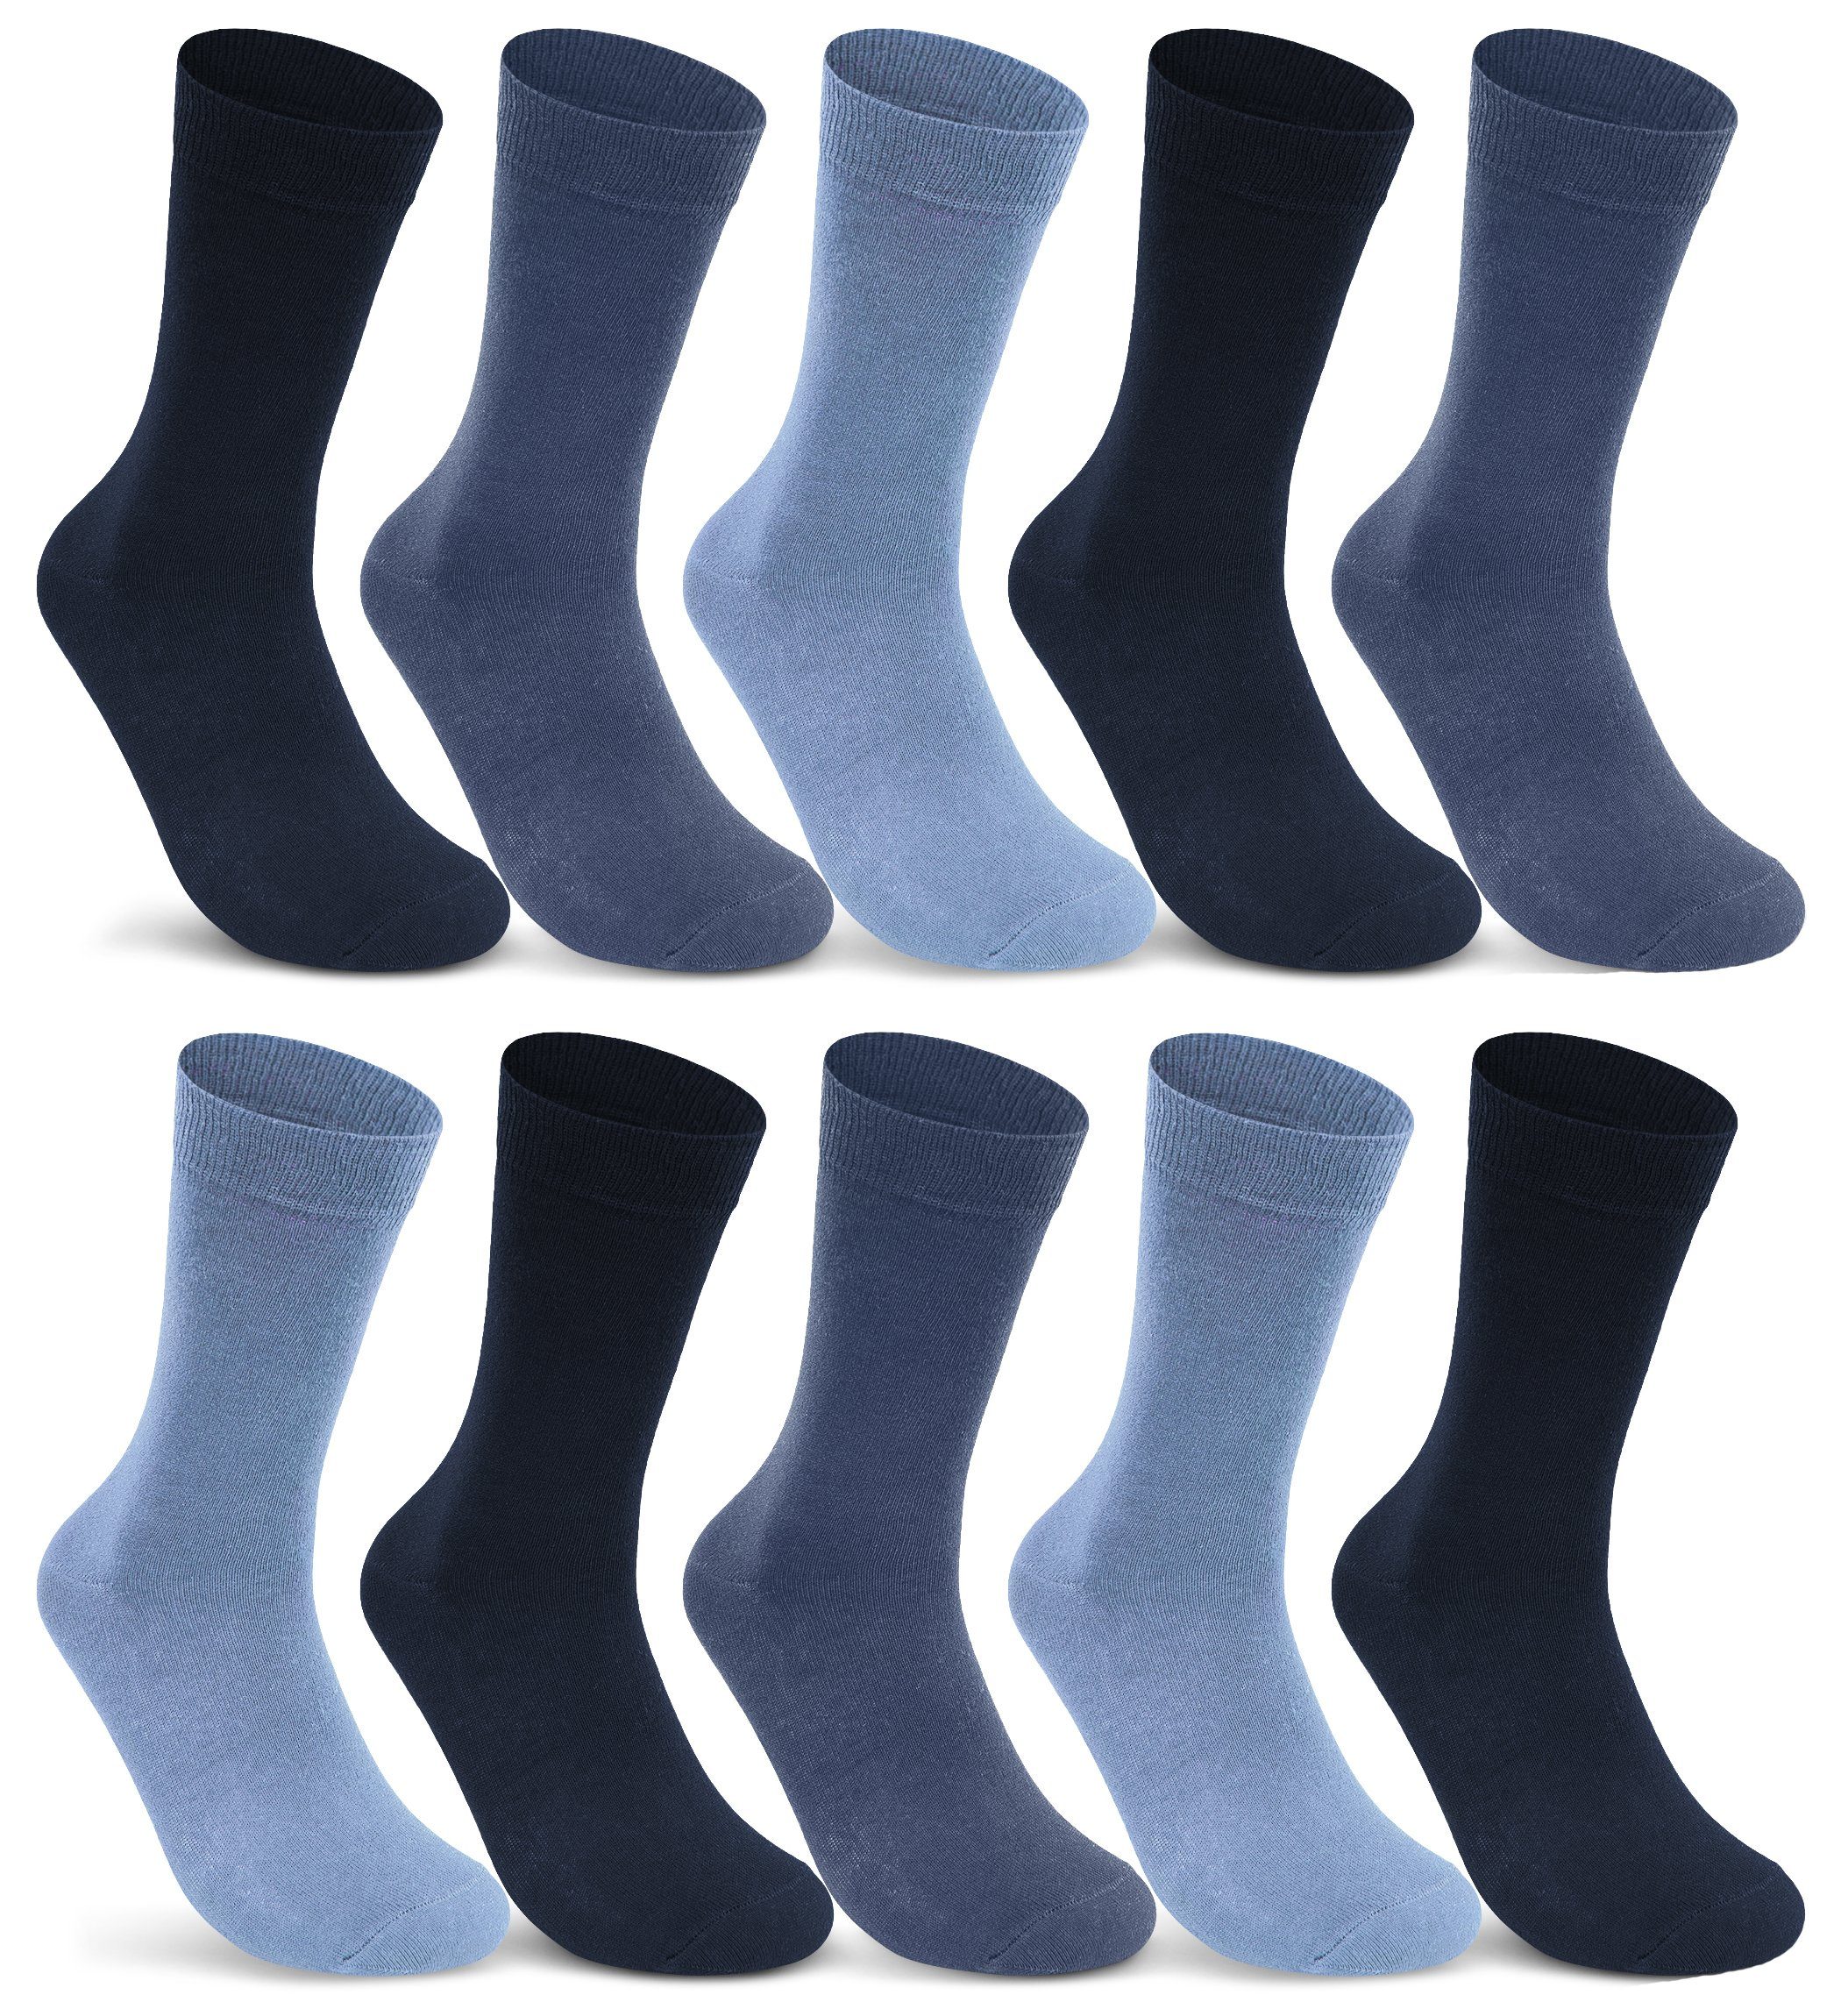 sockenkauf24 Socken 10 I 20 I 30 Paar Damen & Herren Business Socken Baumwolle (Jeans, Navy, Blau, 10-Paar, 47-50) mit Komfortbund Strümpfe - 10700